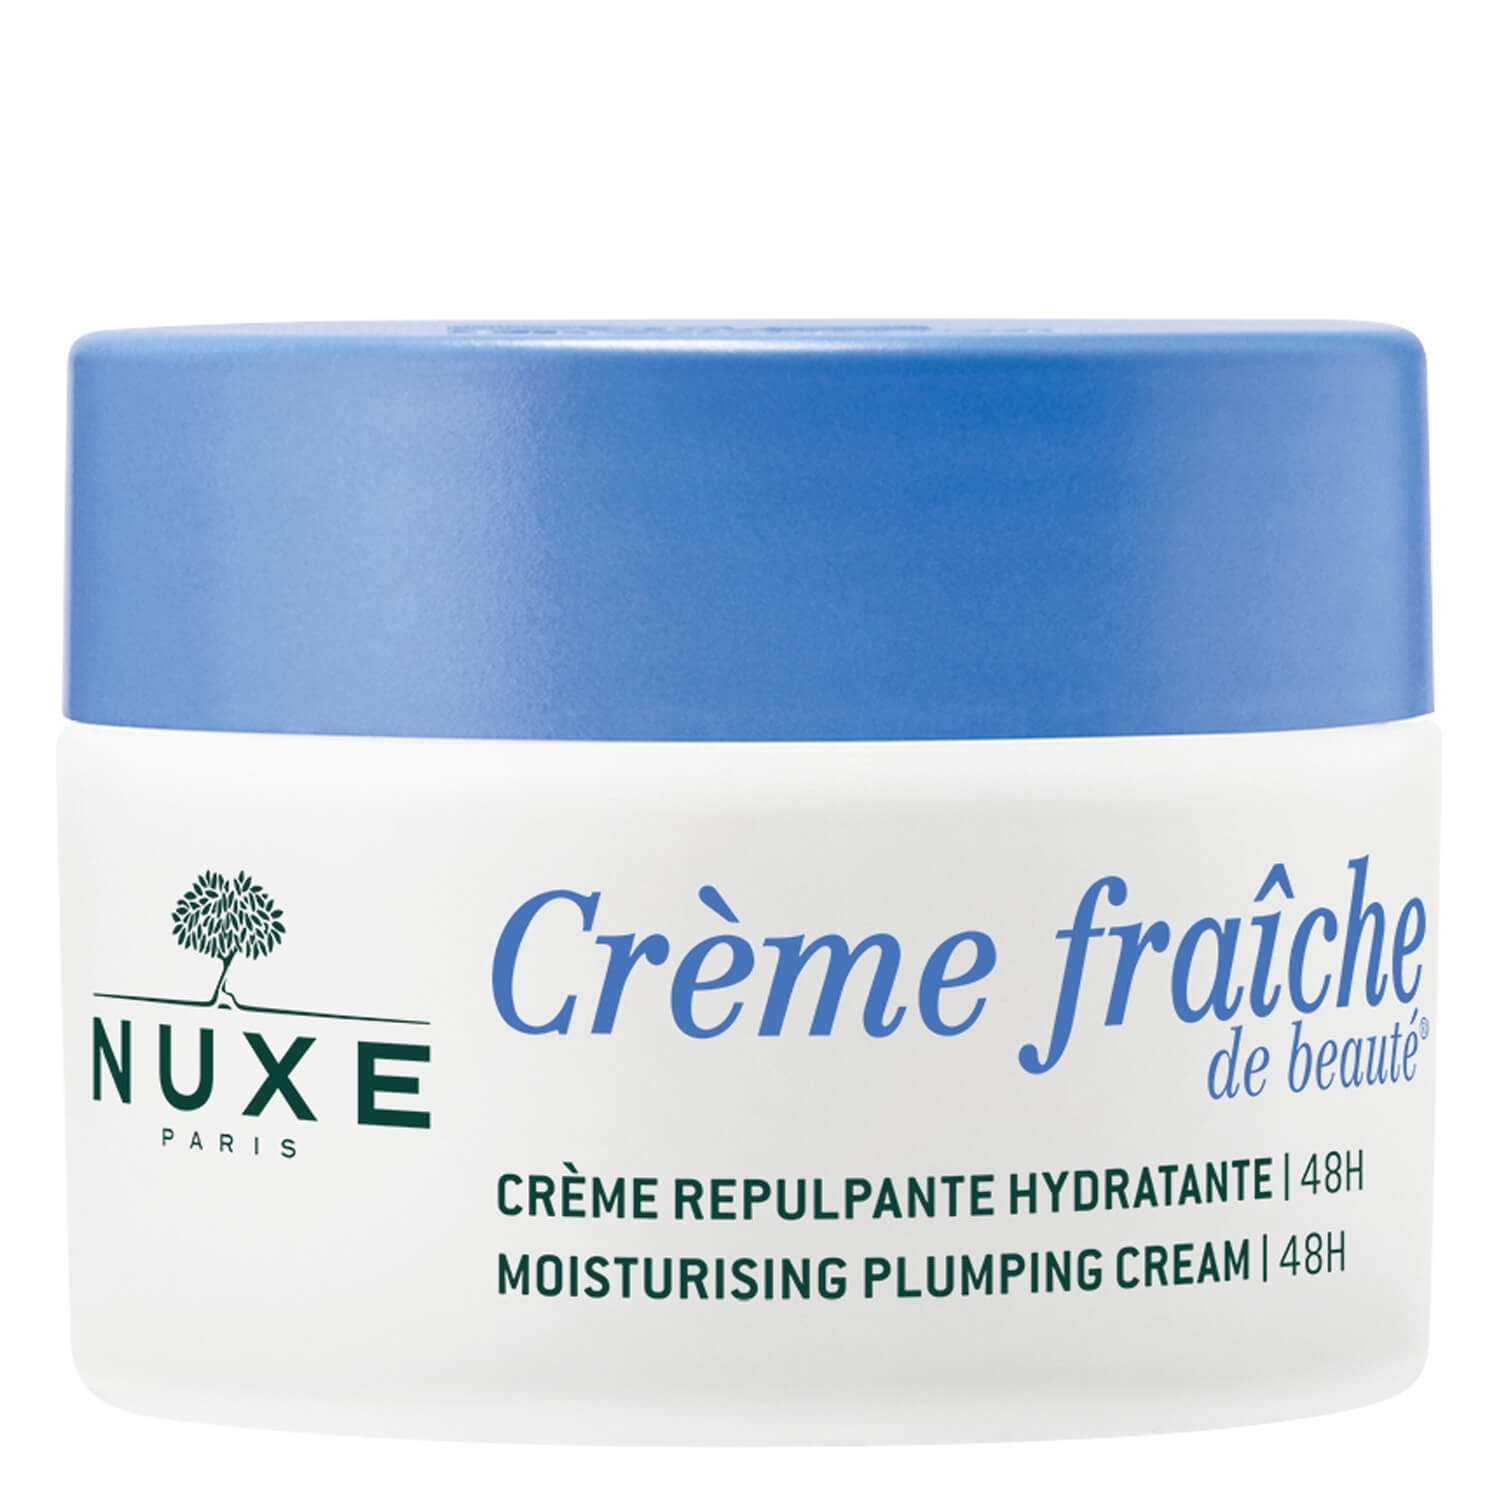 Produktbild von Crème Fraîche de Beauté - Crème Repulpante Hydratante 48H